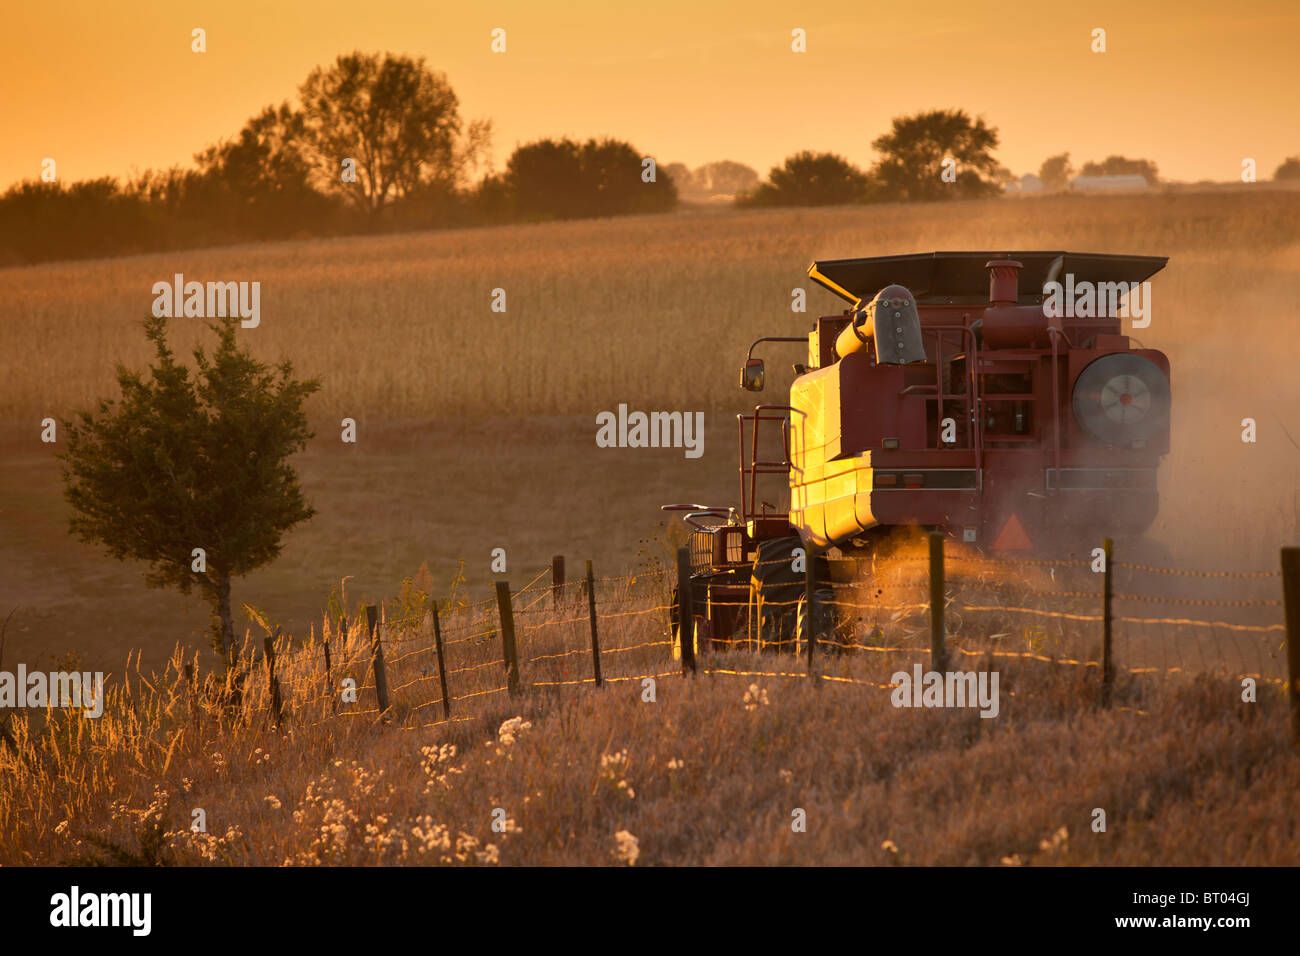 Una cosechadora en un campo de maíz al atardecer Foto de stock